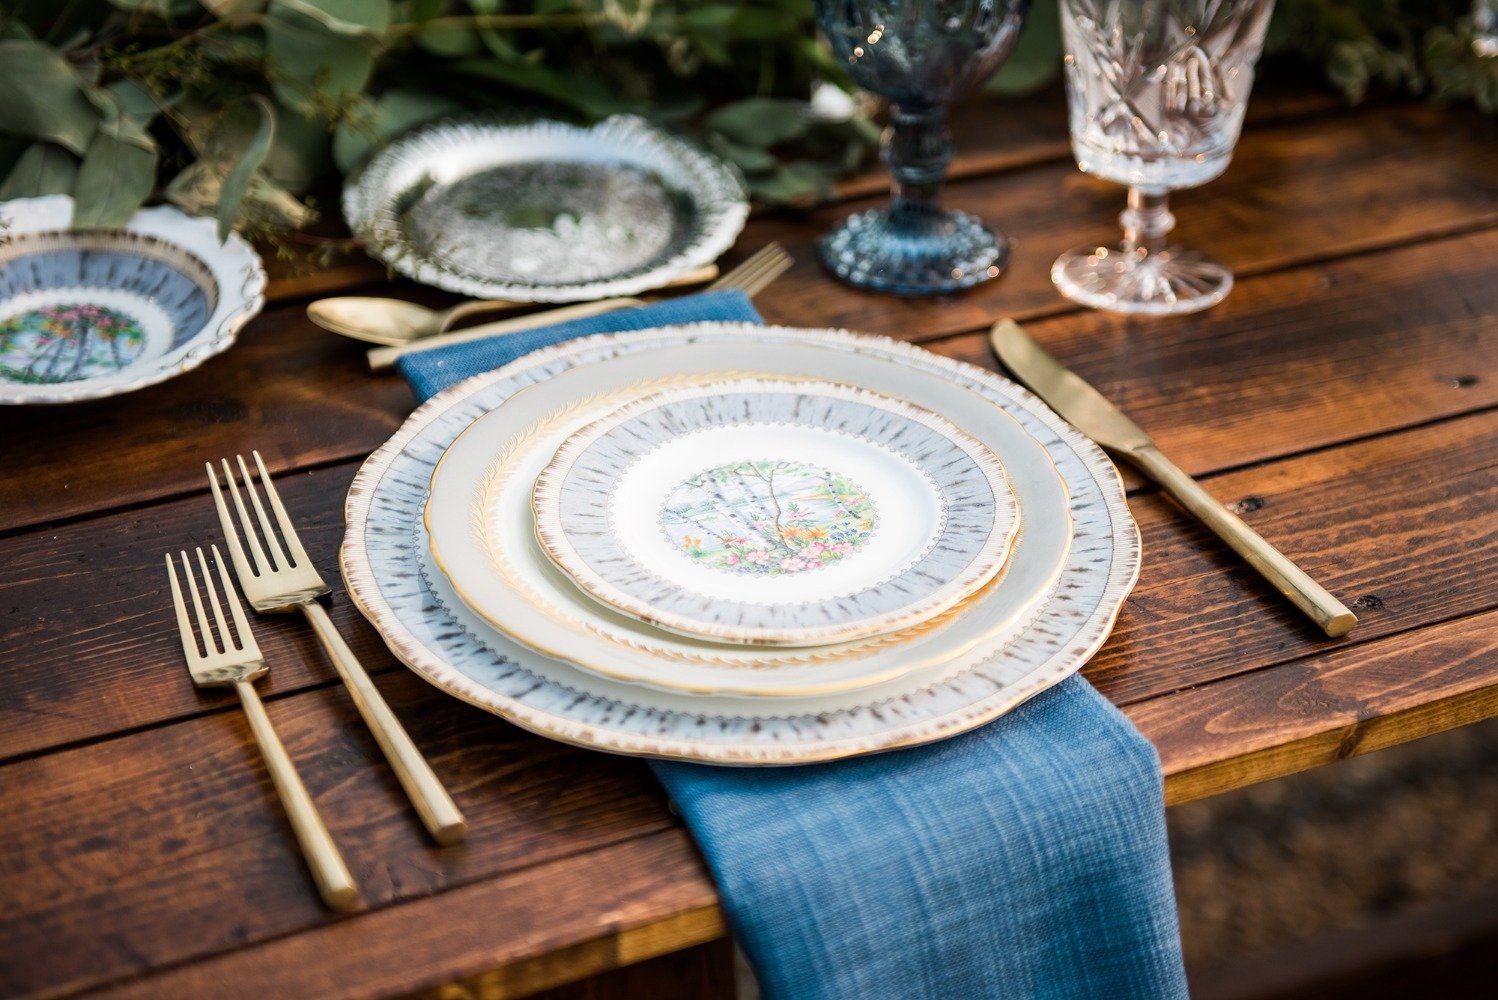 Wedding tableware